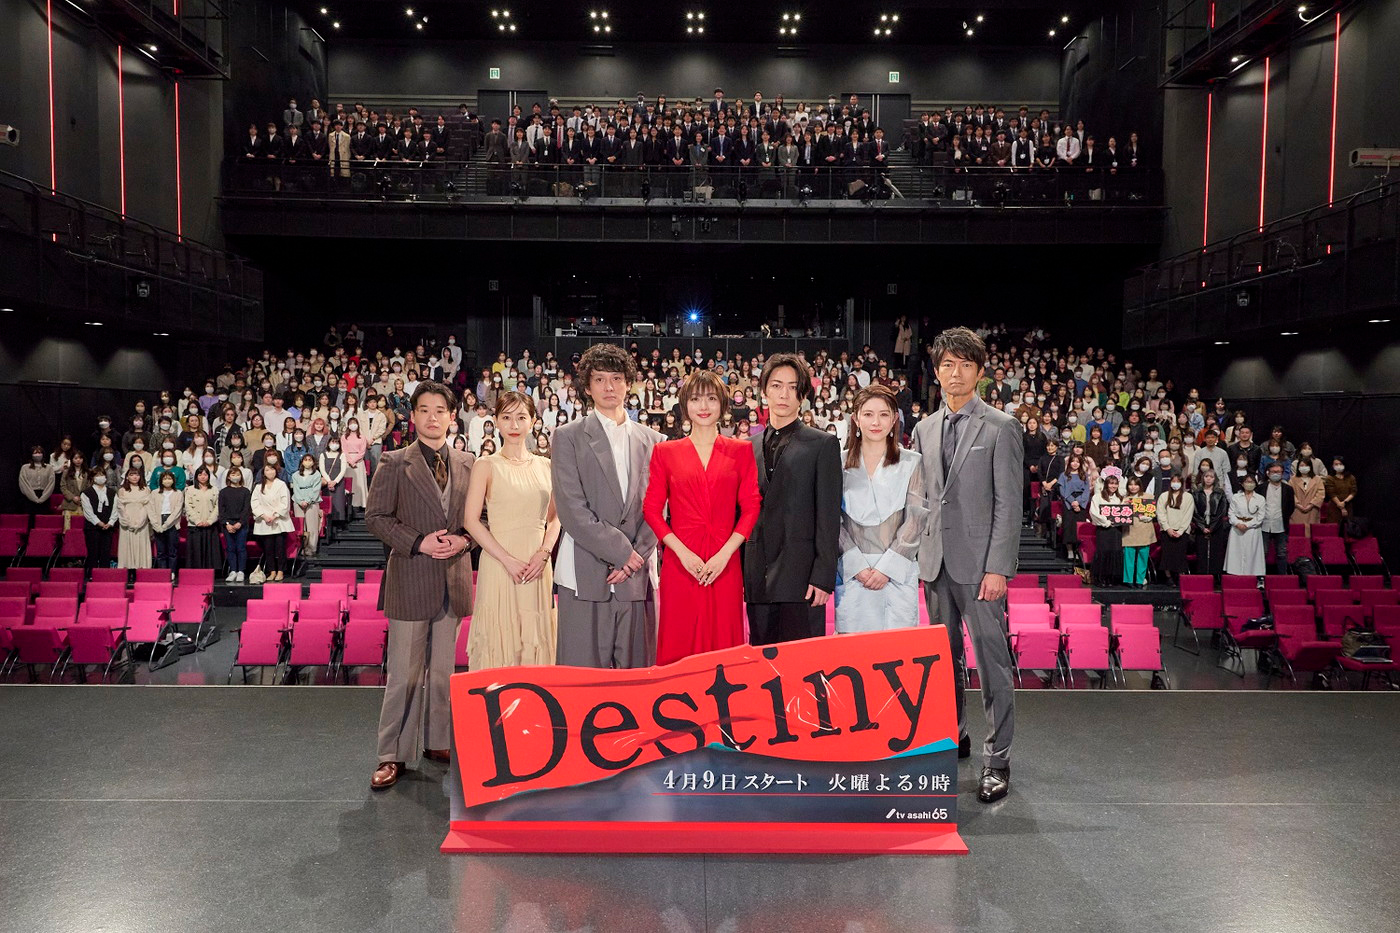 【レポート】亀梨和也、石原さとみ主演ドラマ『Destiny』のイベントで“愛してやまないもの”を告白 - 画像一覧（3/3）